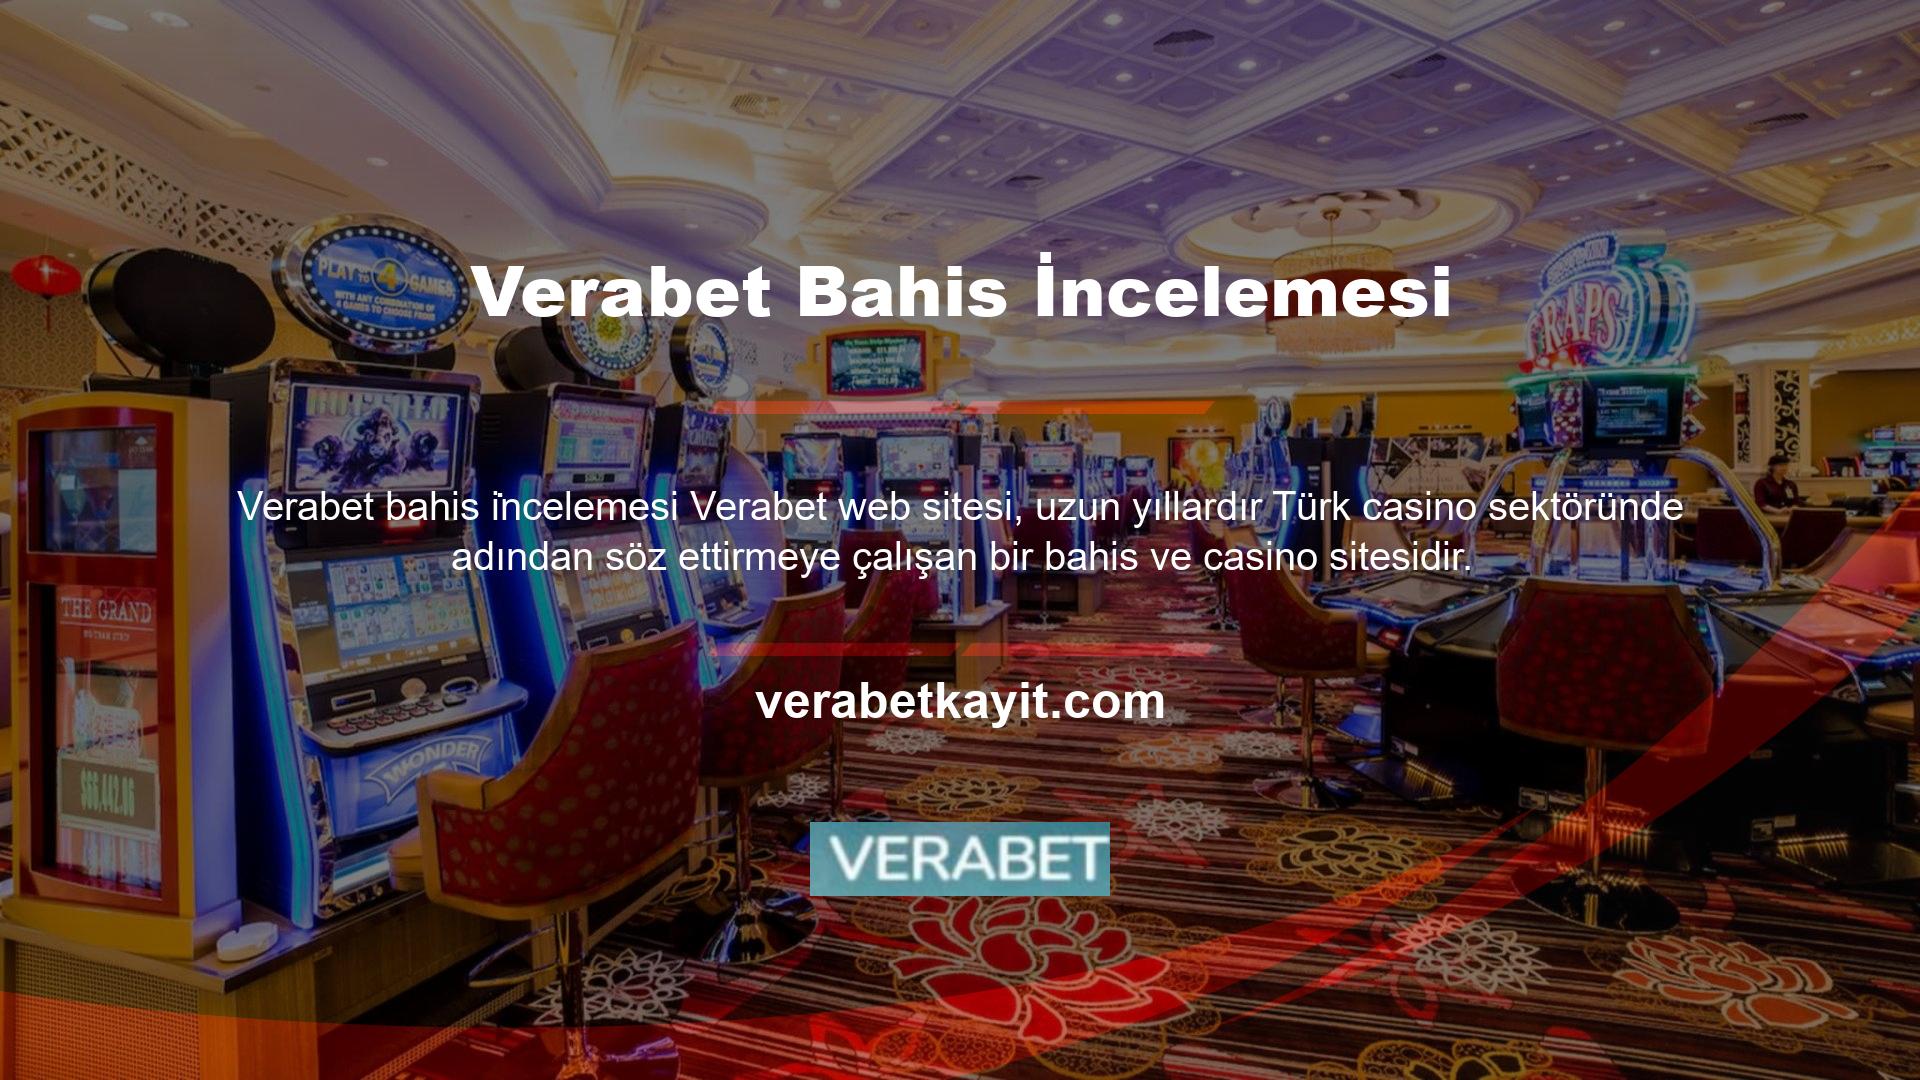 Çok işlevli bir site olan Verabet web sitesi sadece bahislerden ibaret değildir